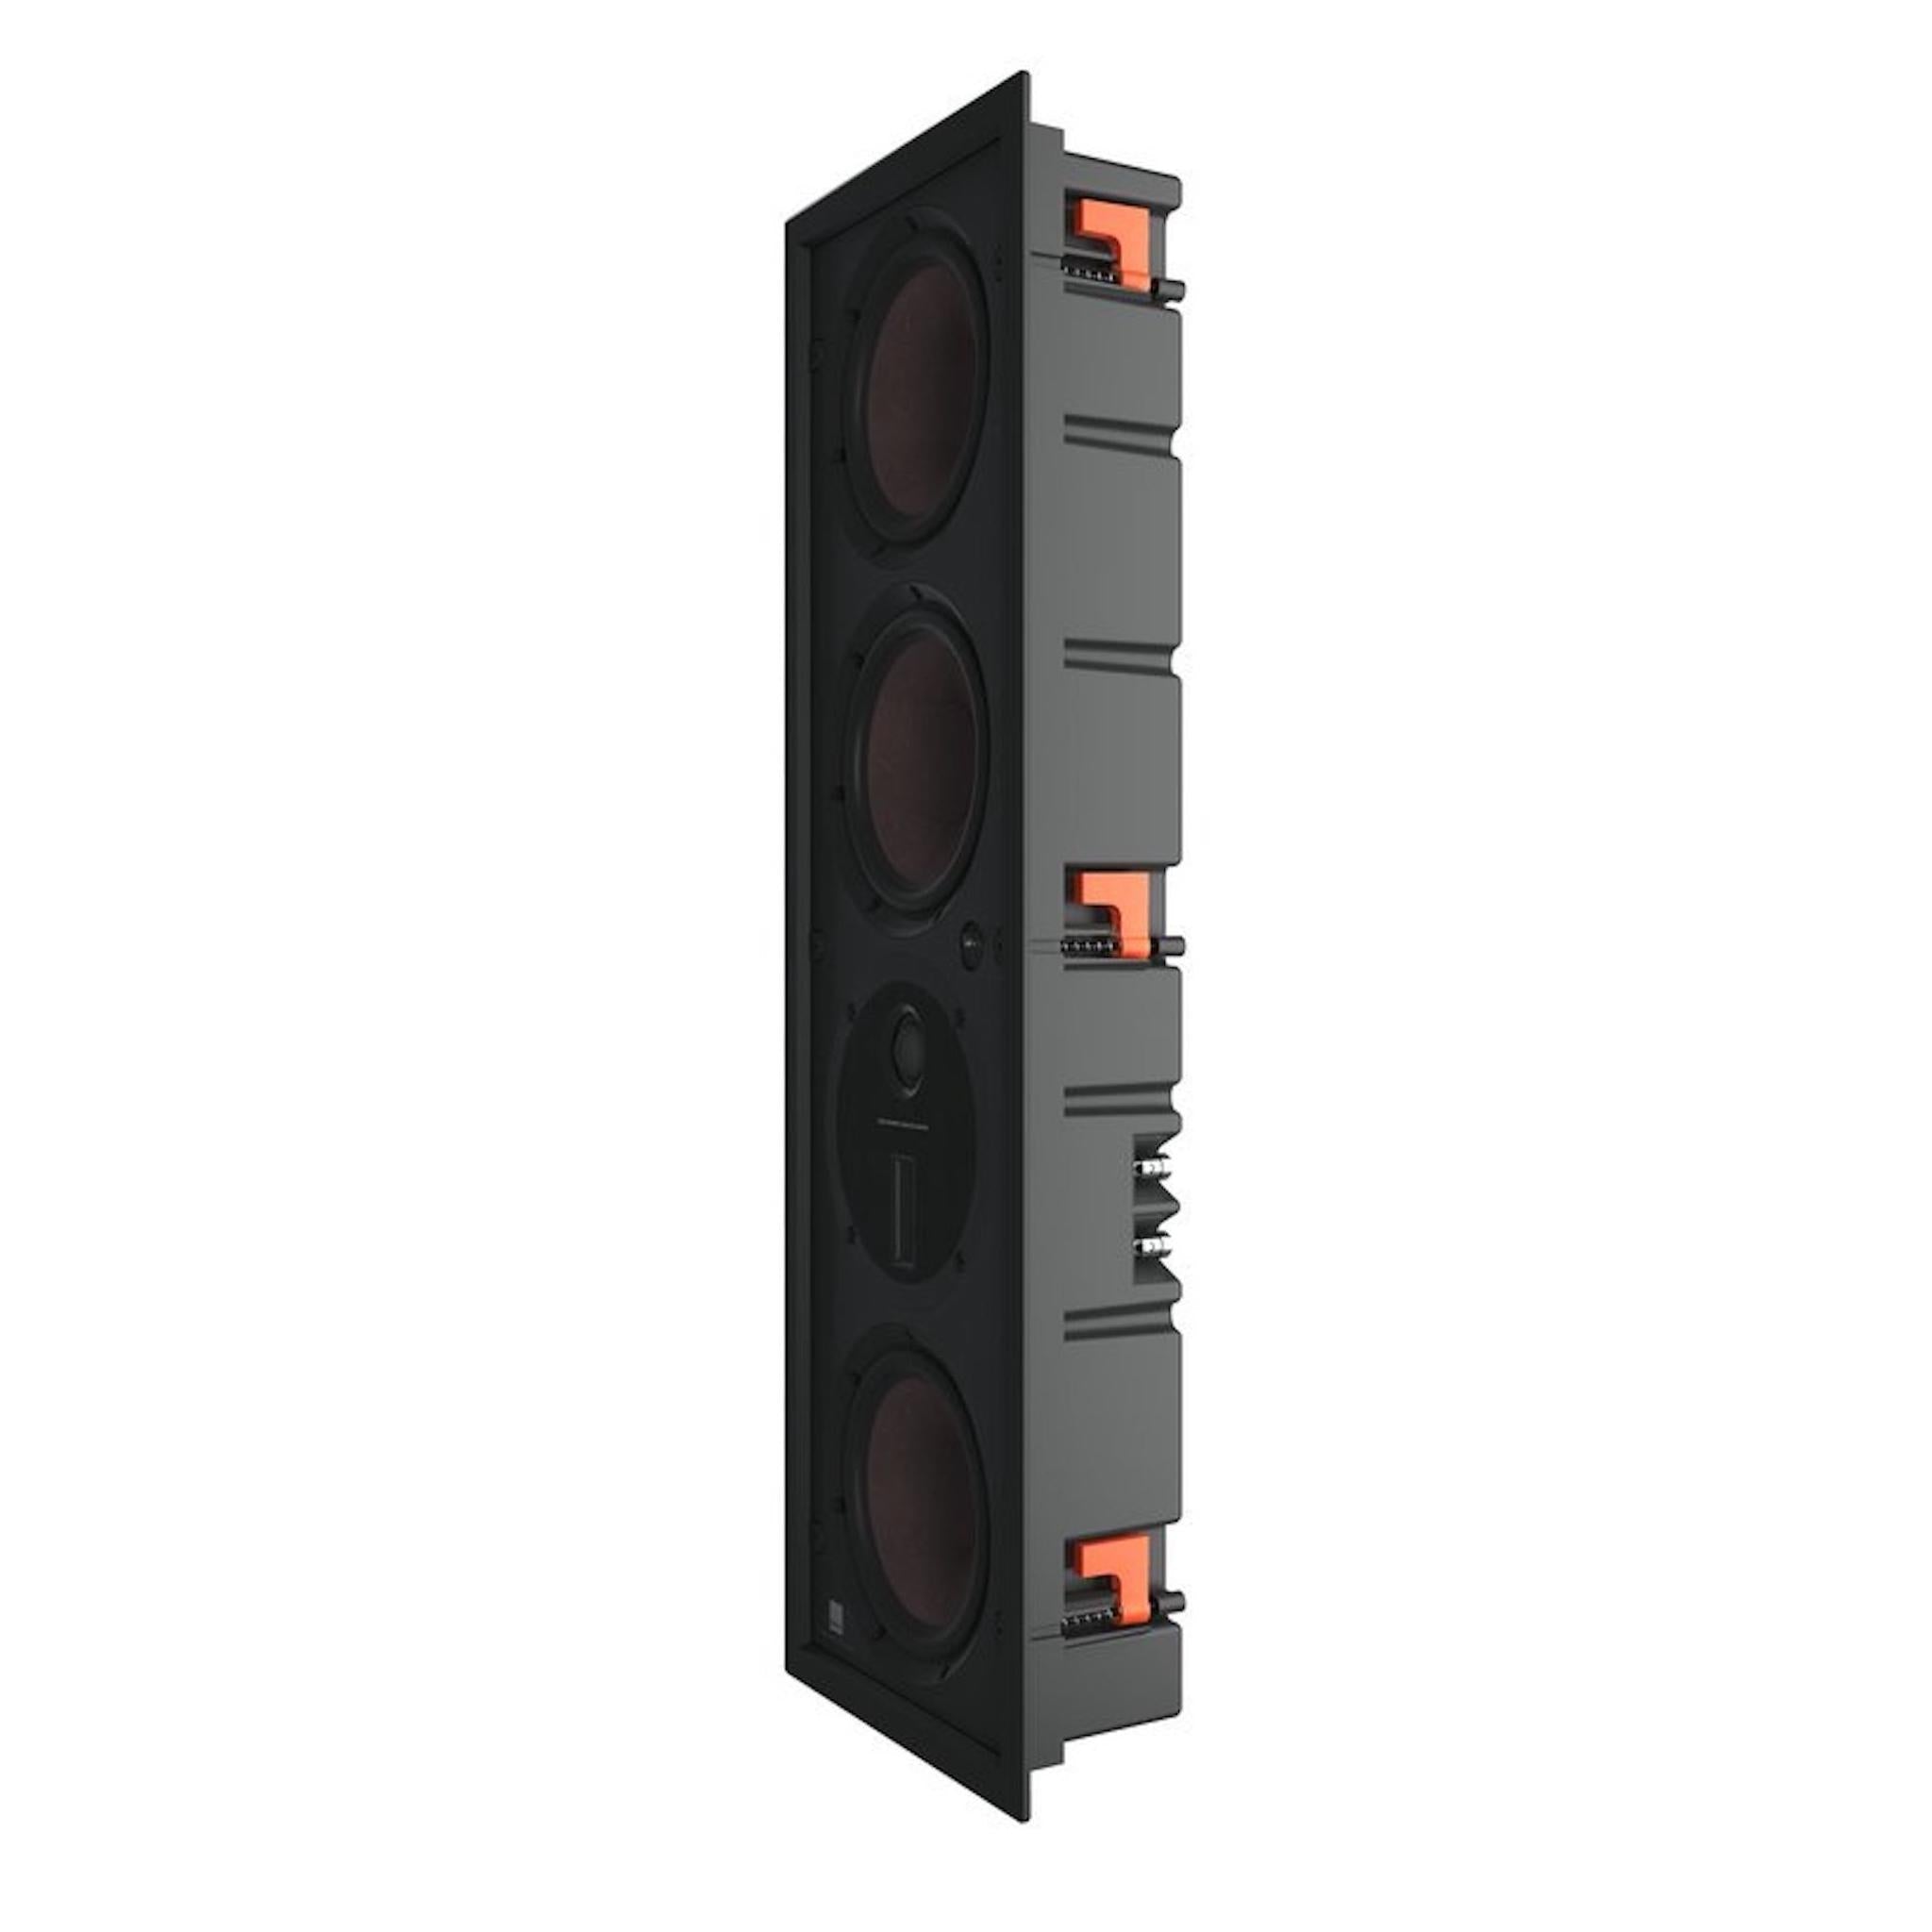 Dali Phantom M-375 - In-Wall Speaker - AVStore